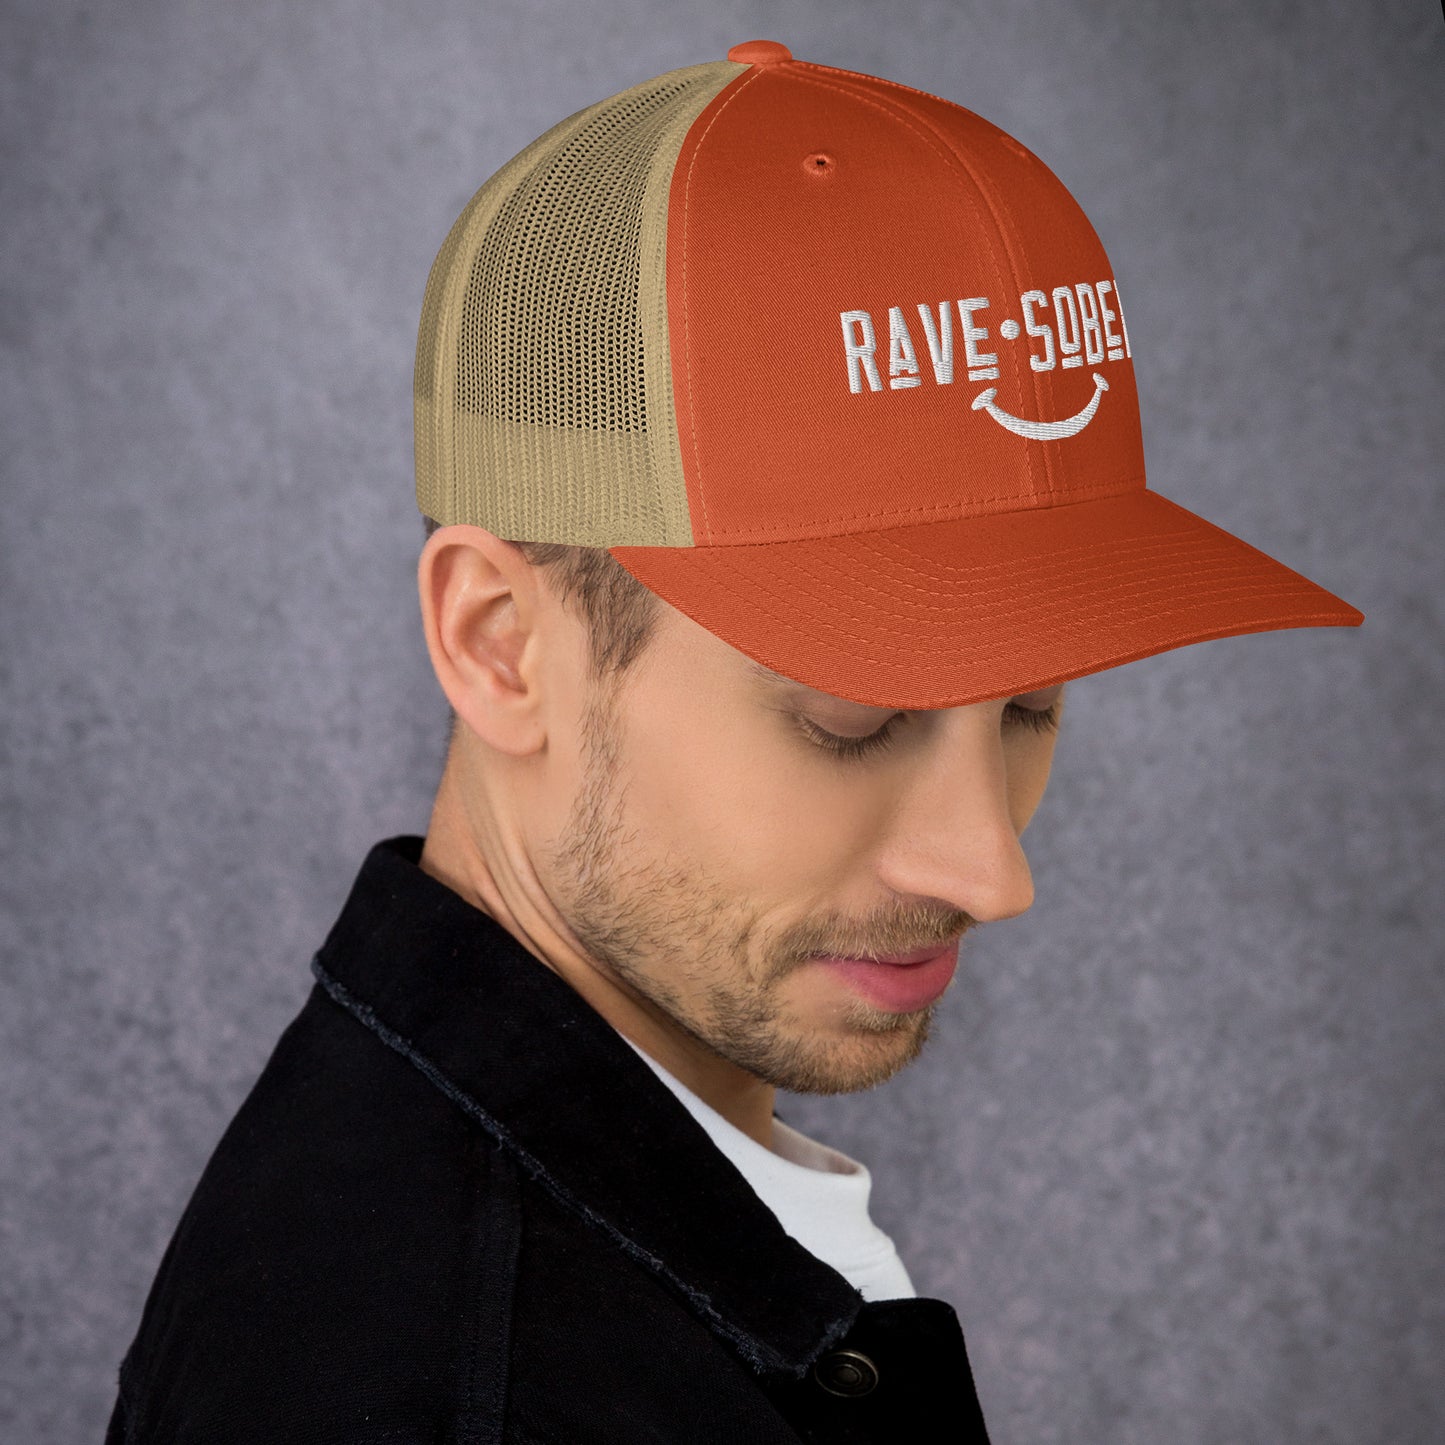 Rave Sober ;) - Trucker Hat